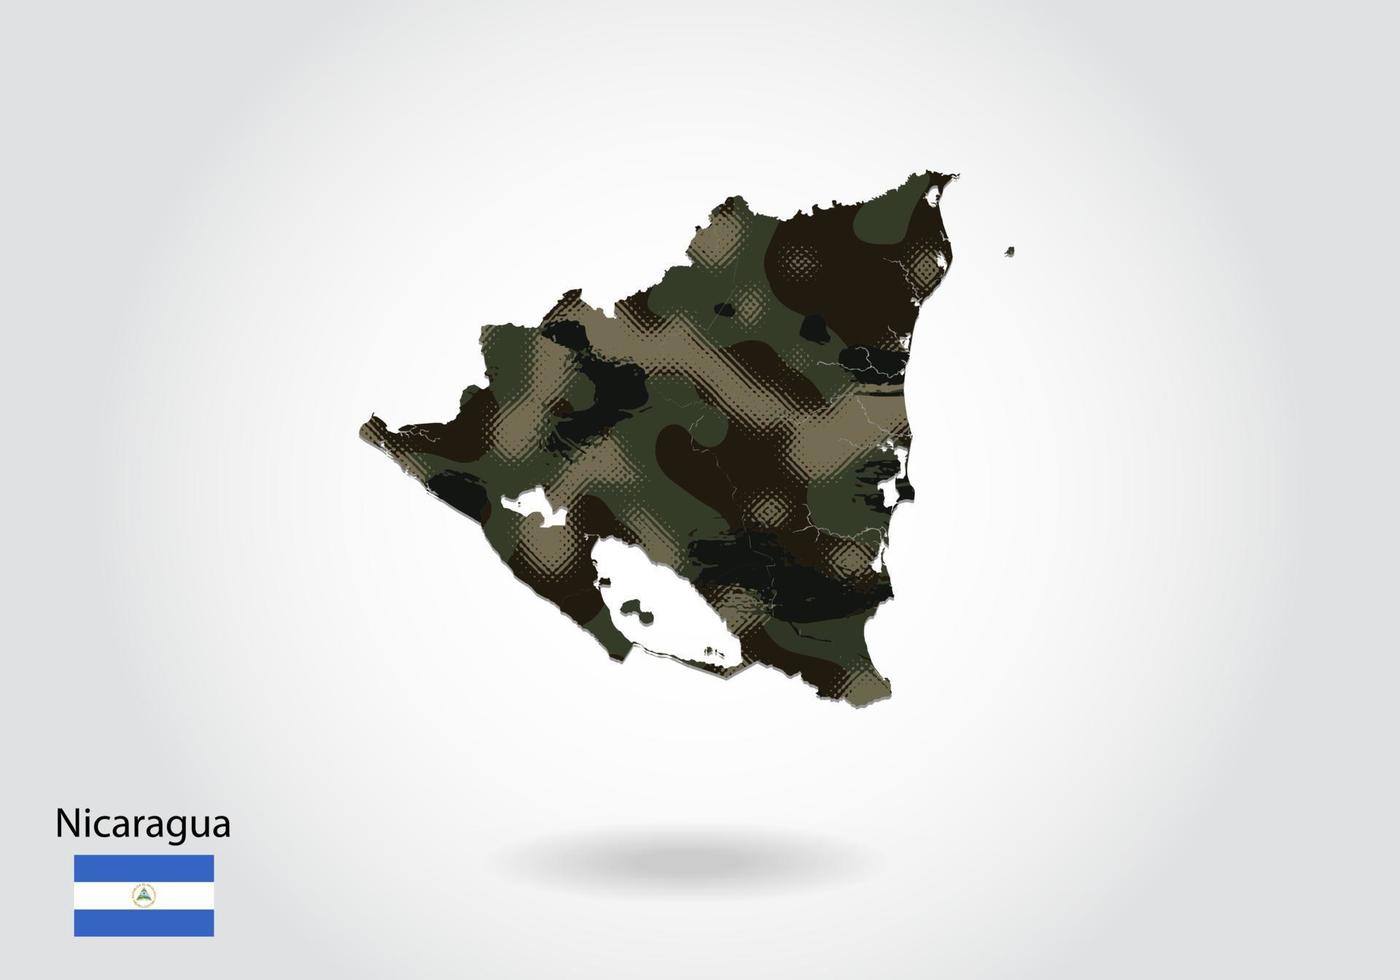 mapa de nicaragua con patrón de camuflaje, bosque - textura verde en el mapa. concepto militar para ejército, soldado y guerra. escudo de armas, bandera. vector